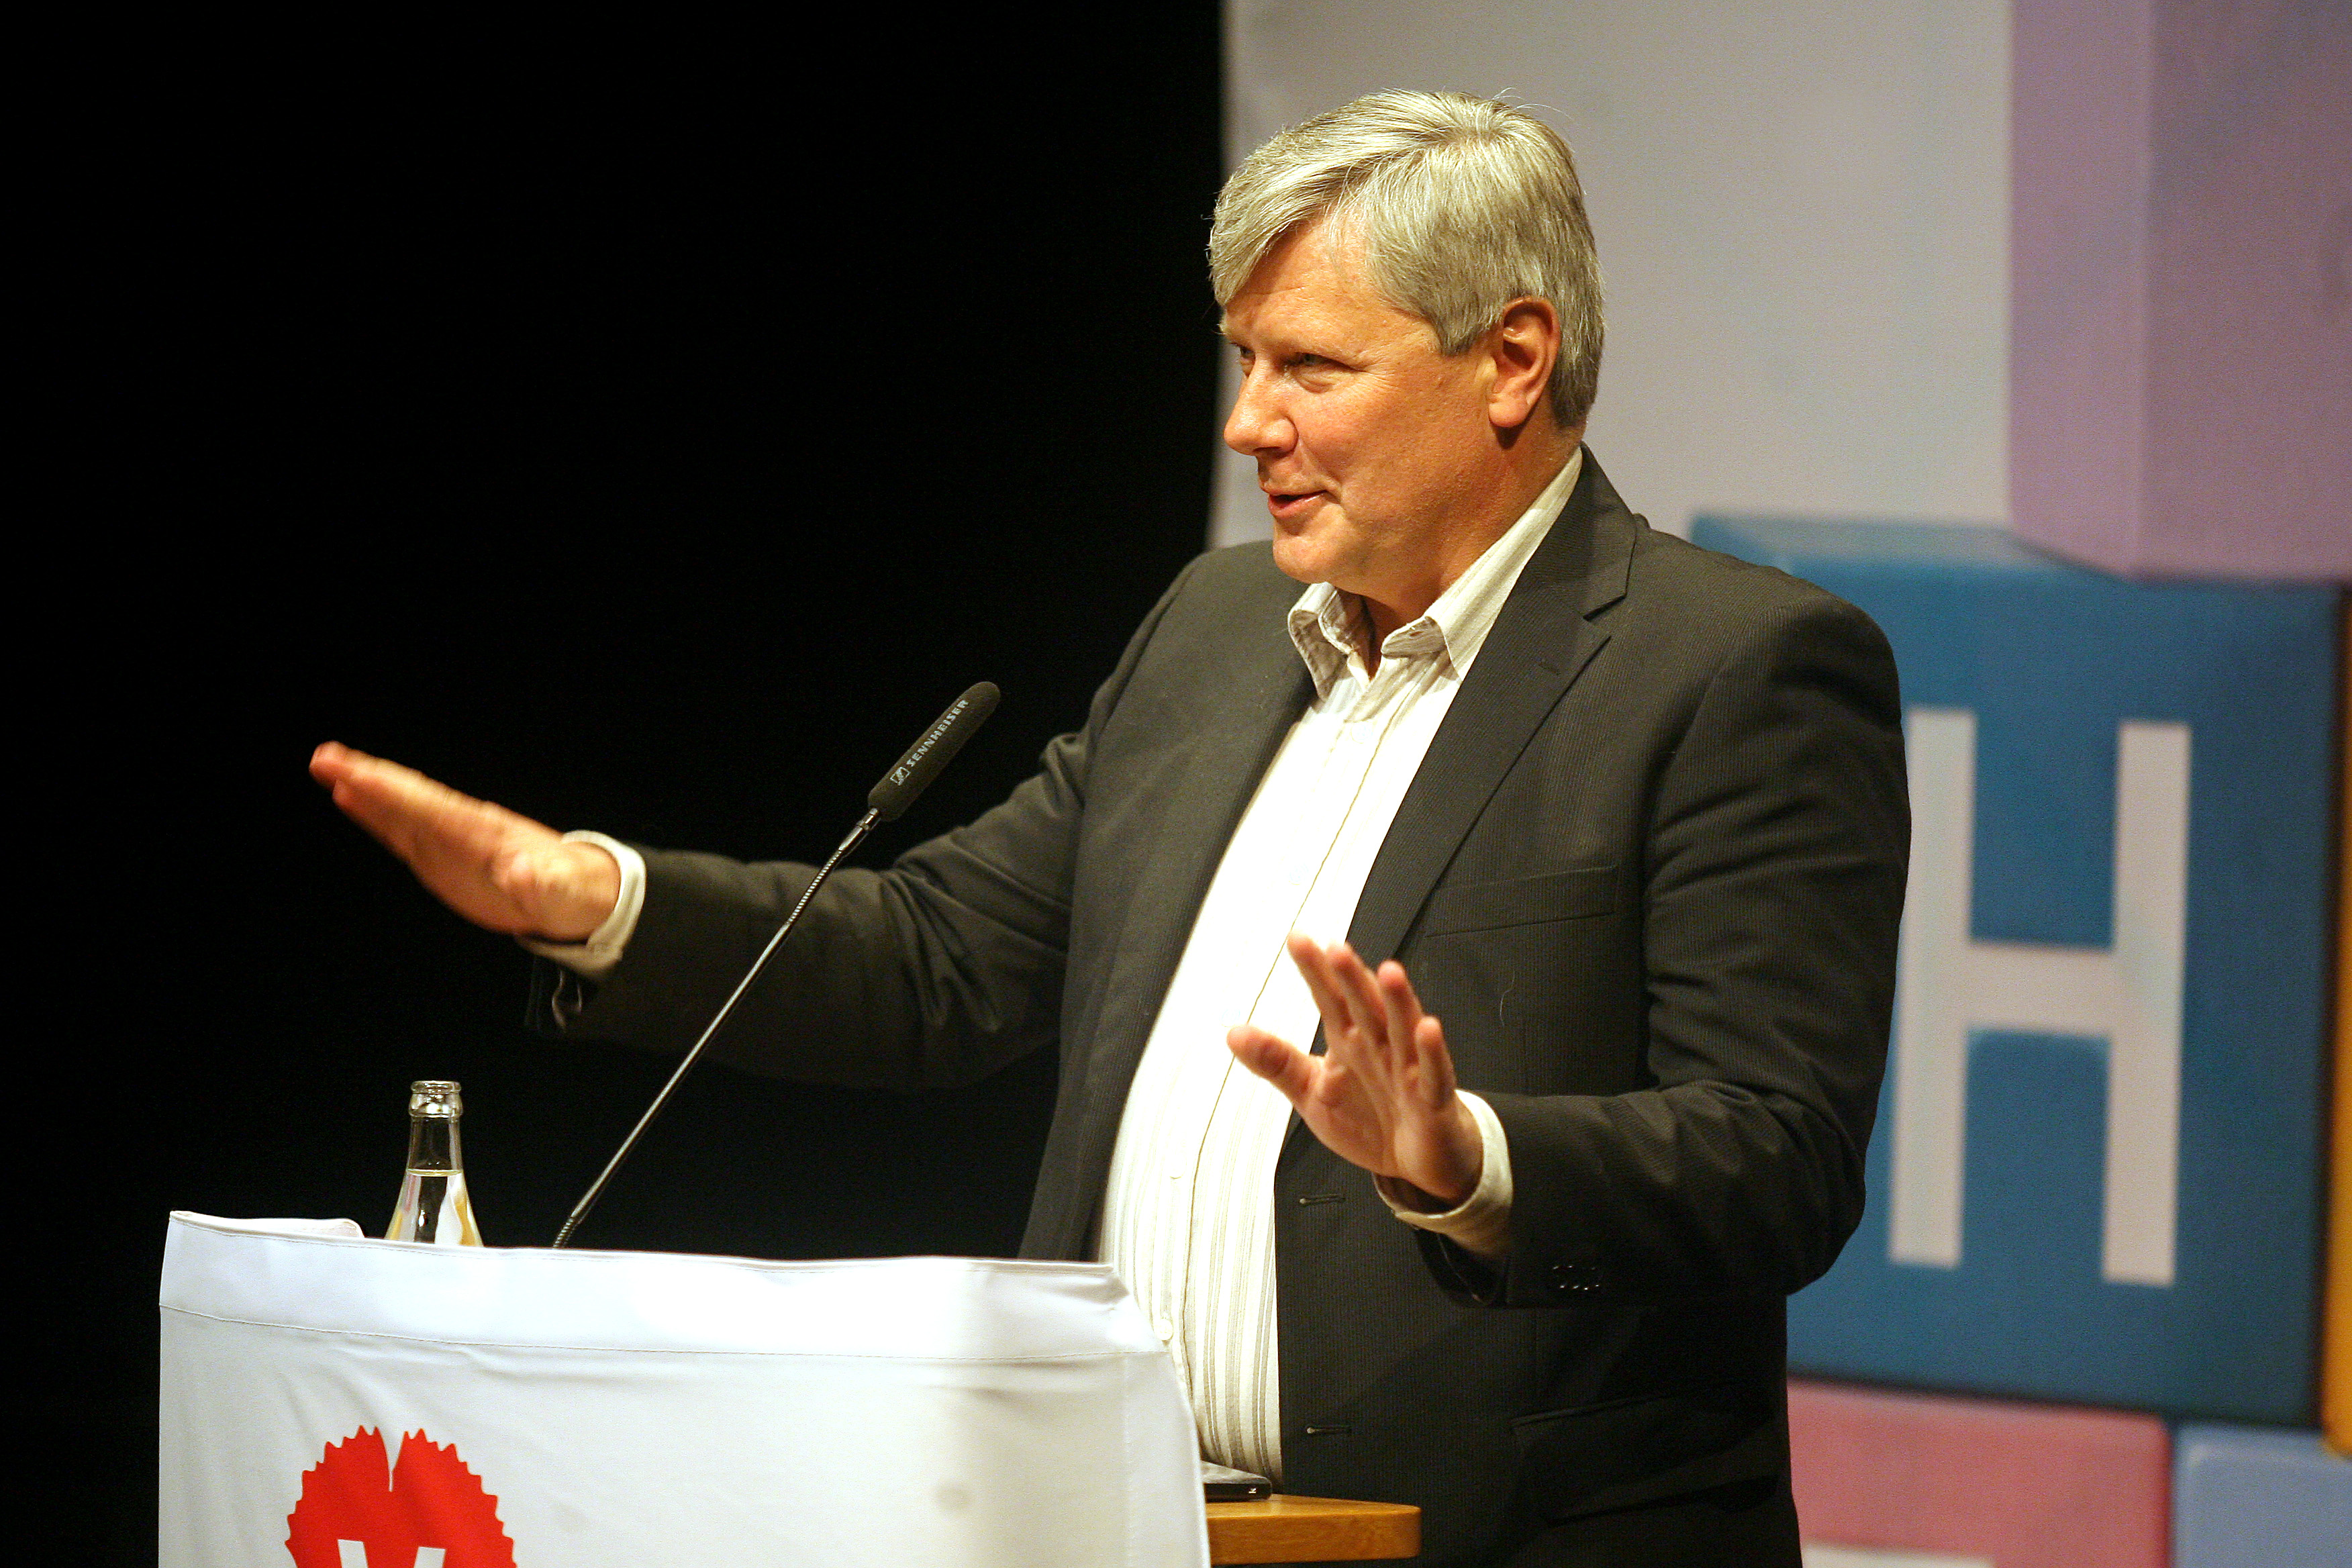 A-kassa, Riksdagsvalet 2010, vänsterpartiet